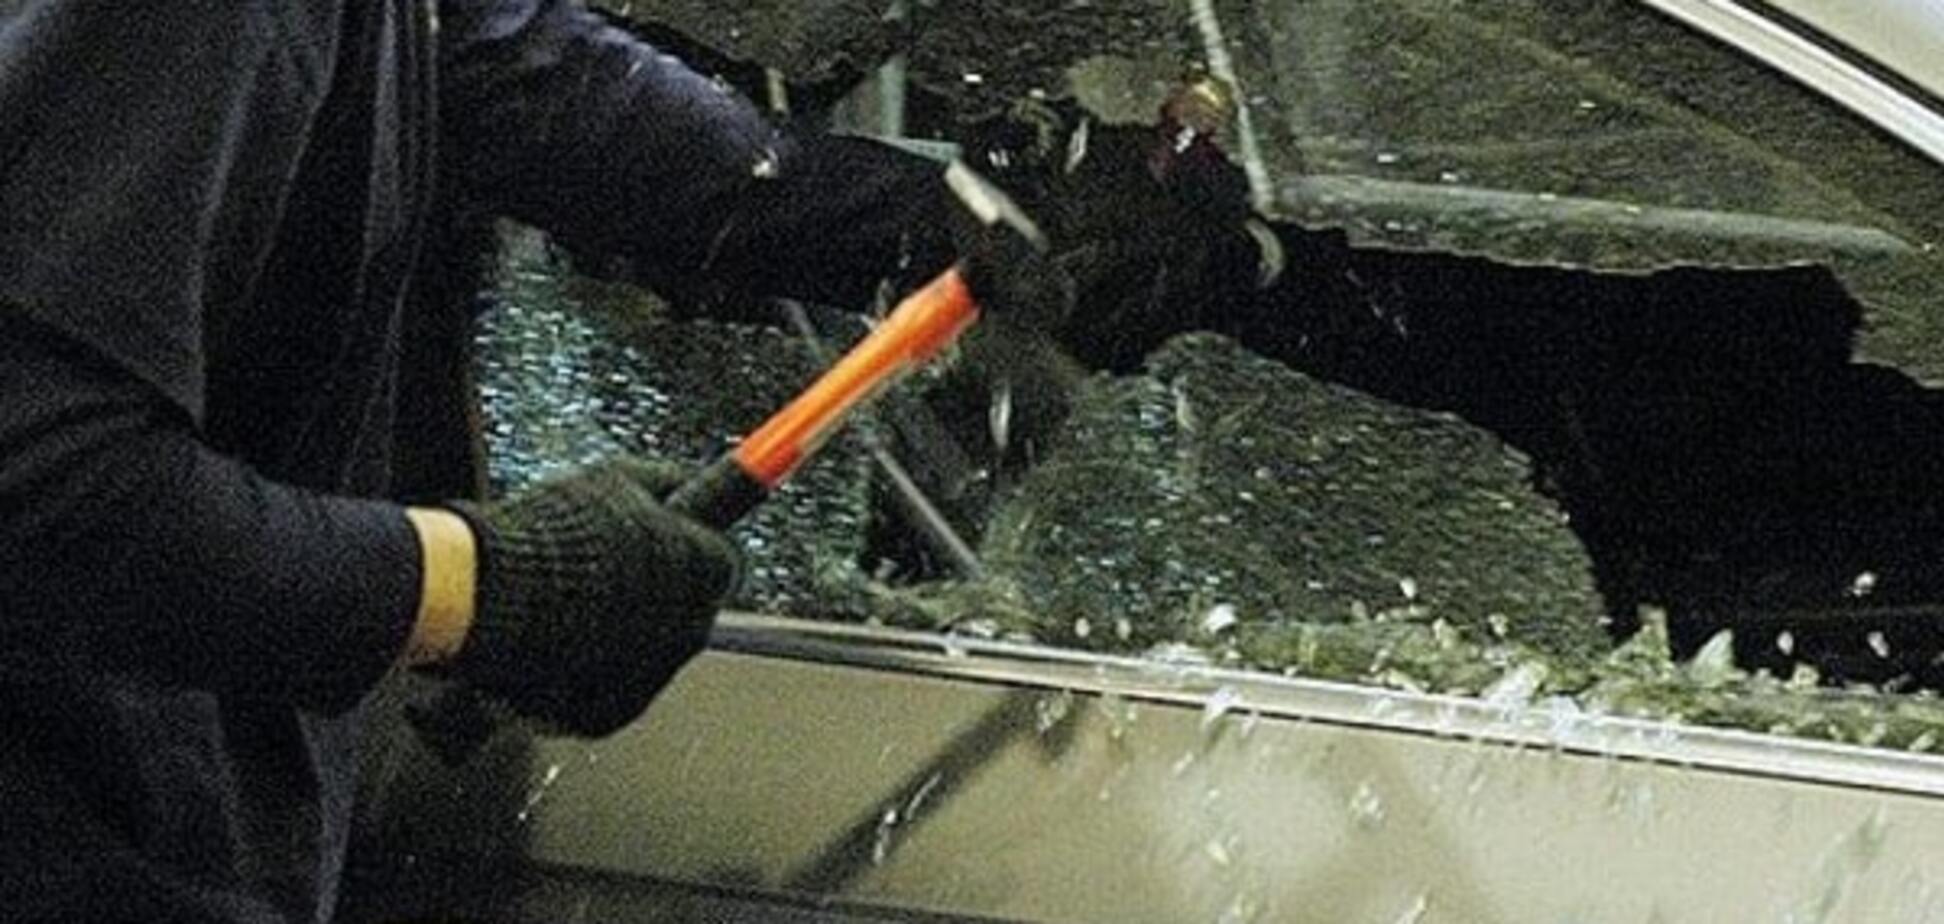 Разгул преступности: в Киеве за сутки вскрыли четыре десятка автомобилей